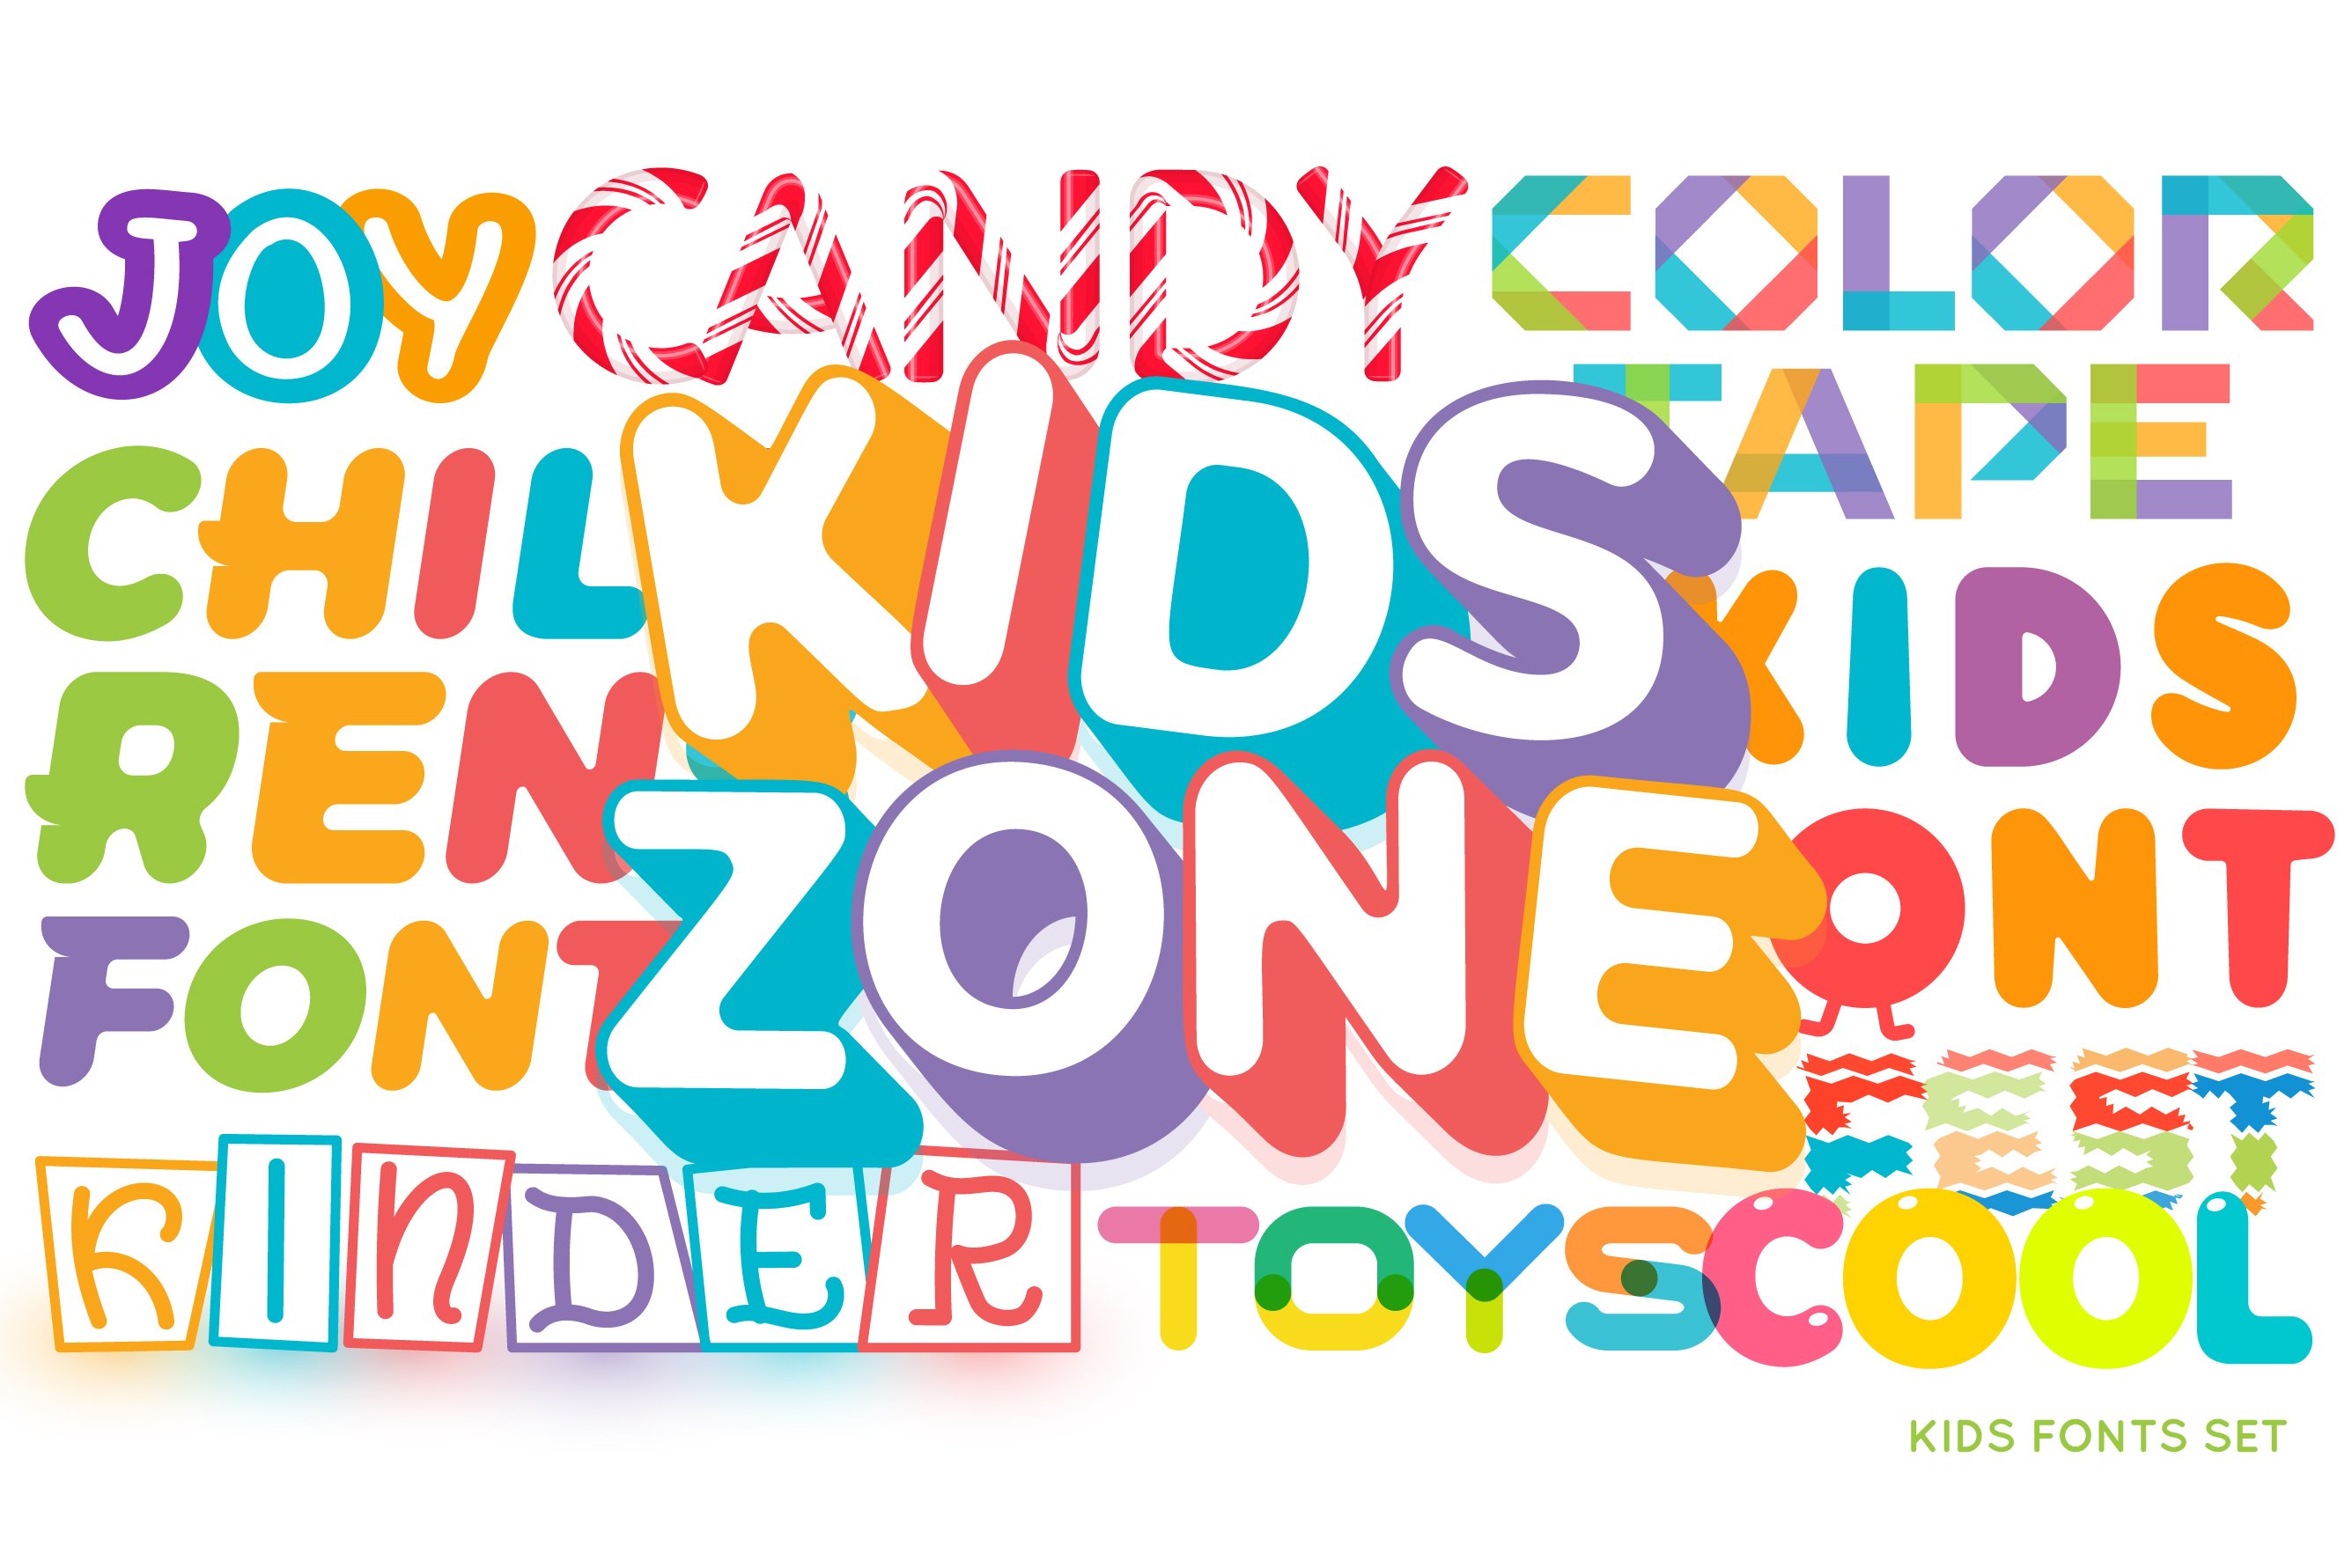 Kids Font Bundle cover image.